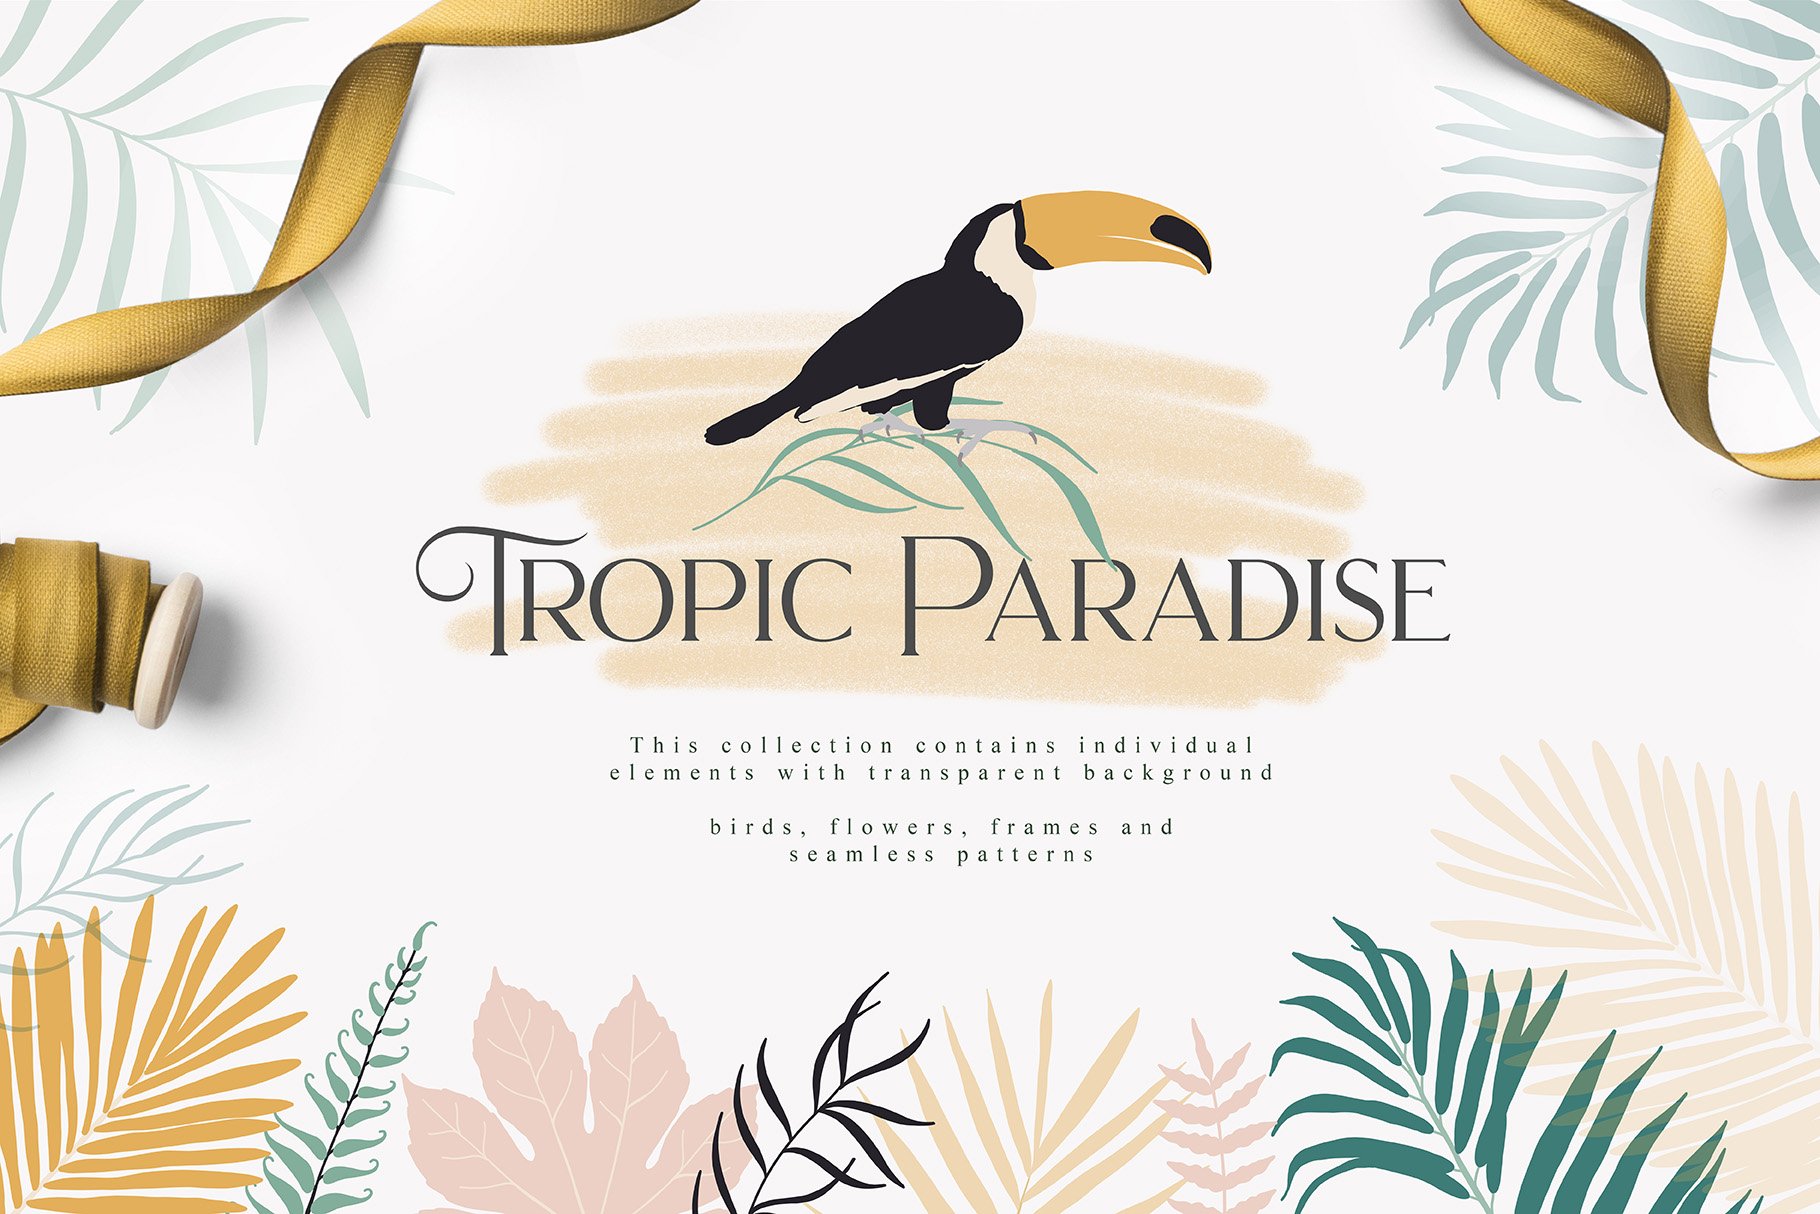 热带天堂图形插画 Tropic Paradise Colle